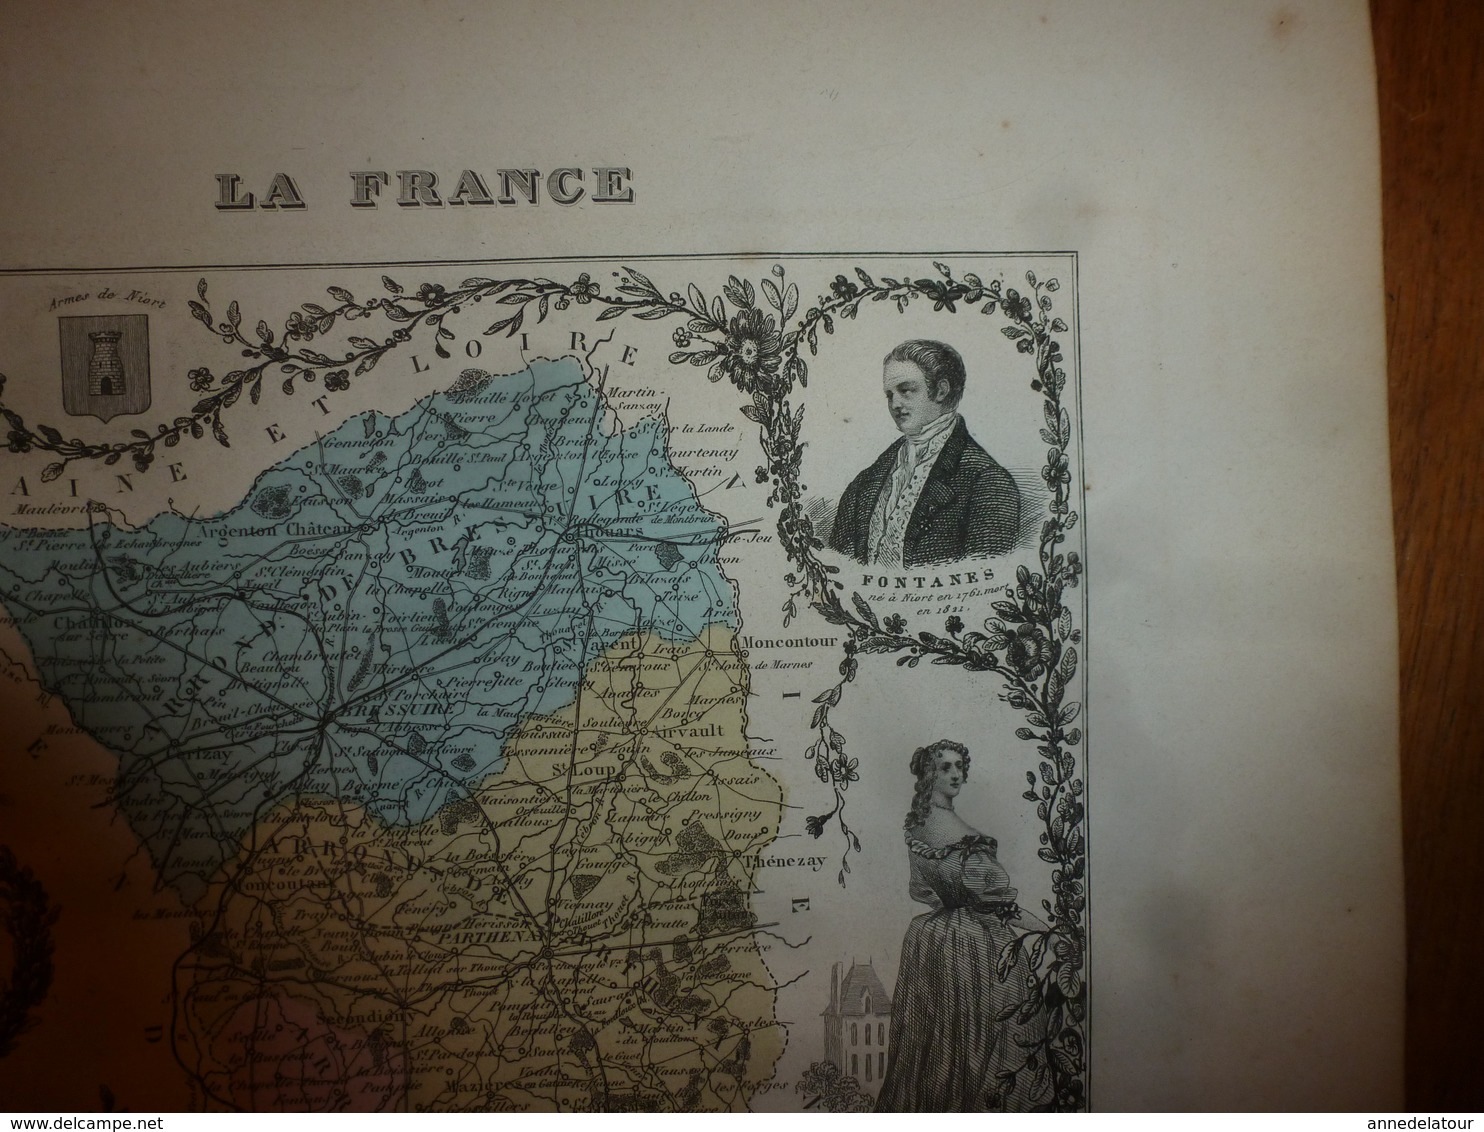 1880:DEUX-SEVRES(Niort,Bressuire,Melle,Parthenay,Beauvoir,Thouars,etc) Carte Géo-Descriptive en taille douce par Migeon.